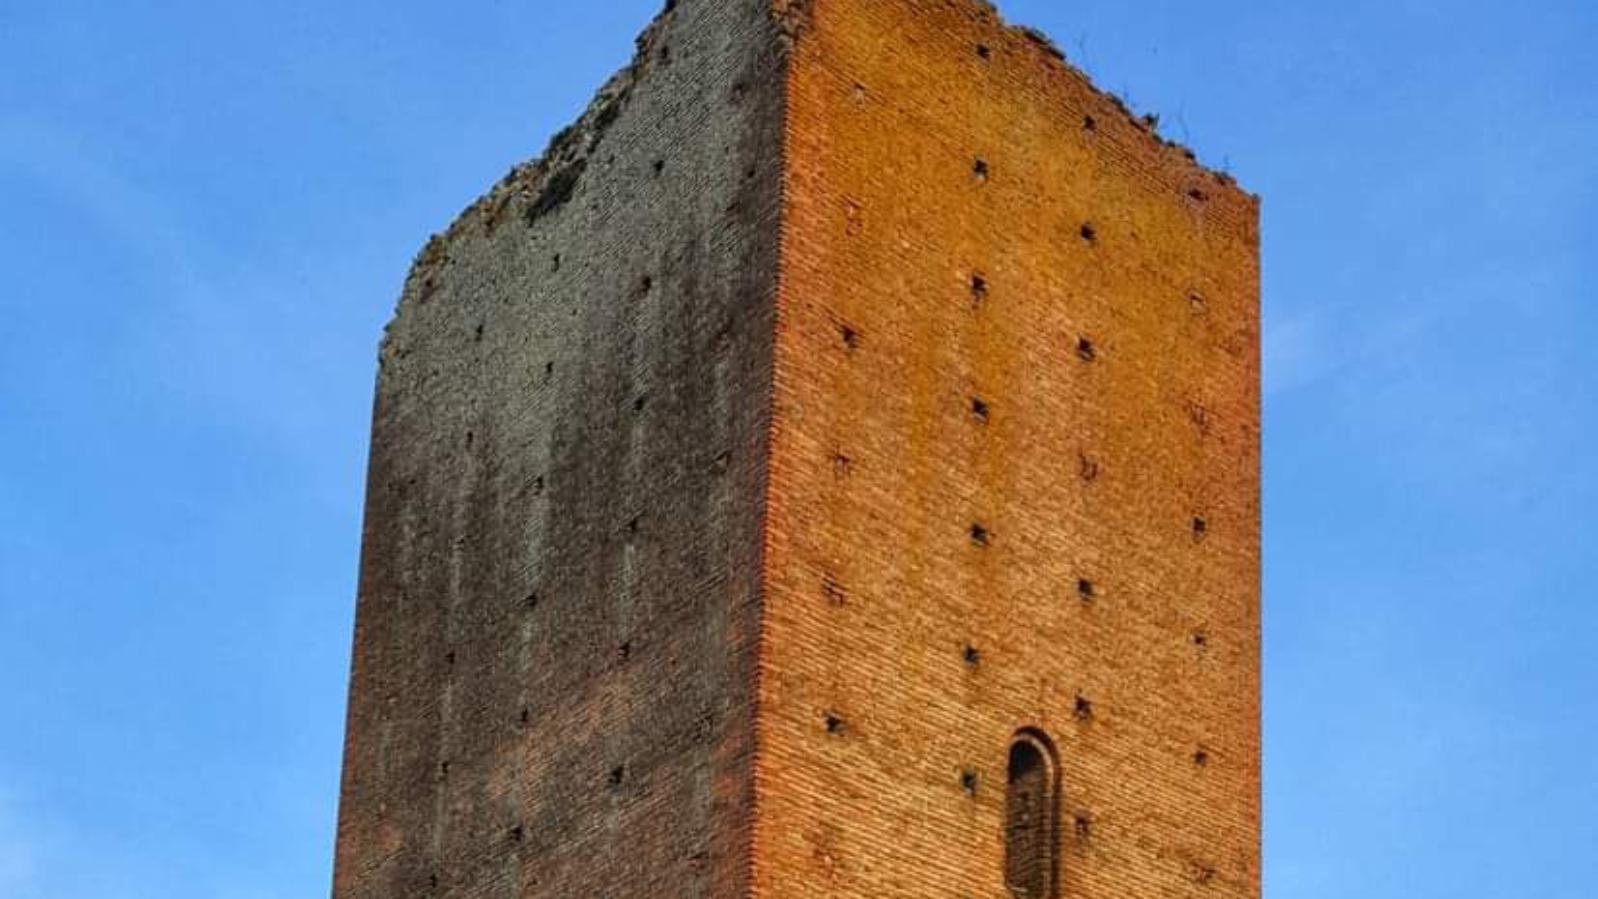 Torre di Galliera, Galliera - foto dell'archivio del Comune di Galliera, Laura Patroncini, 2021